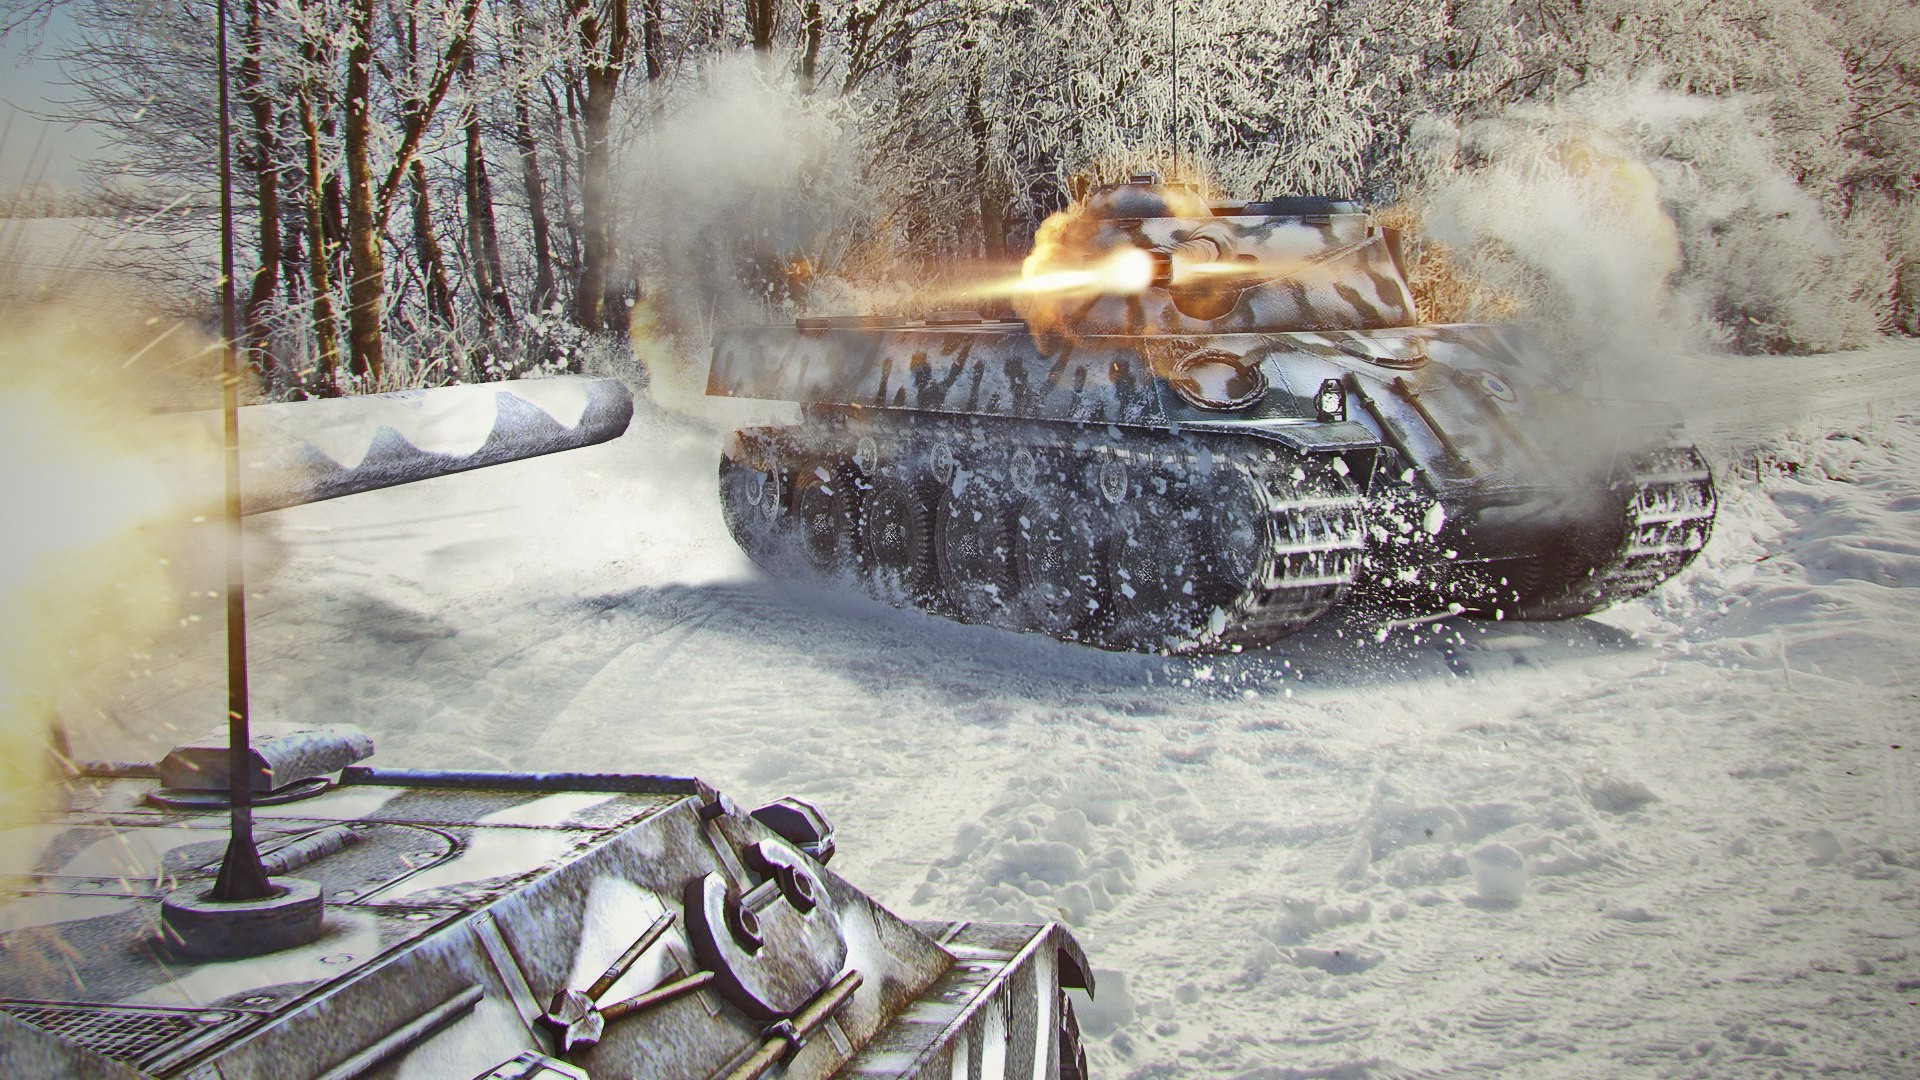 World Of Tanks, Wargaming, Video Games Wallpaper